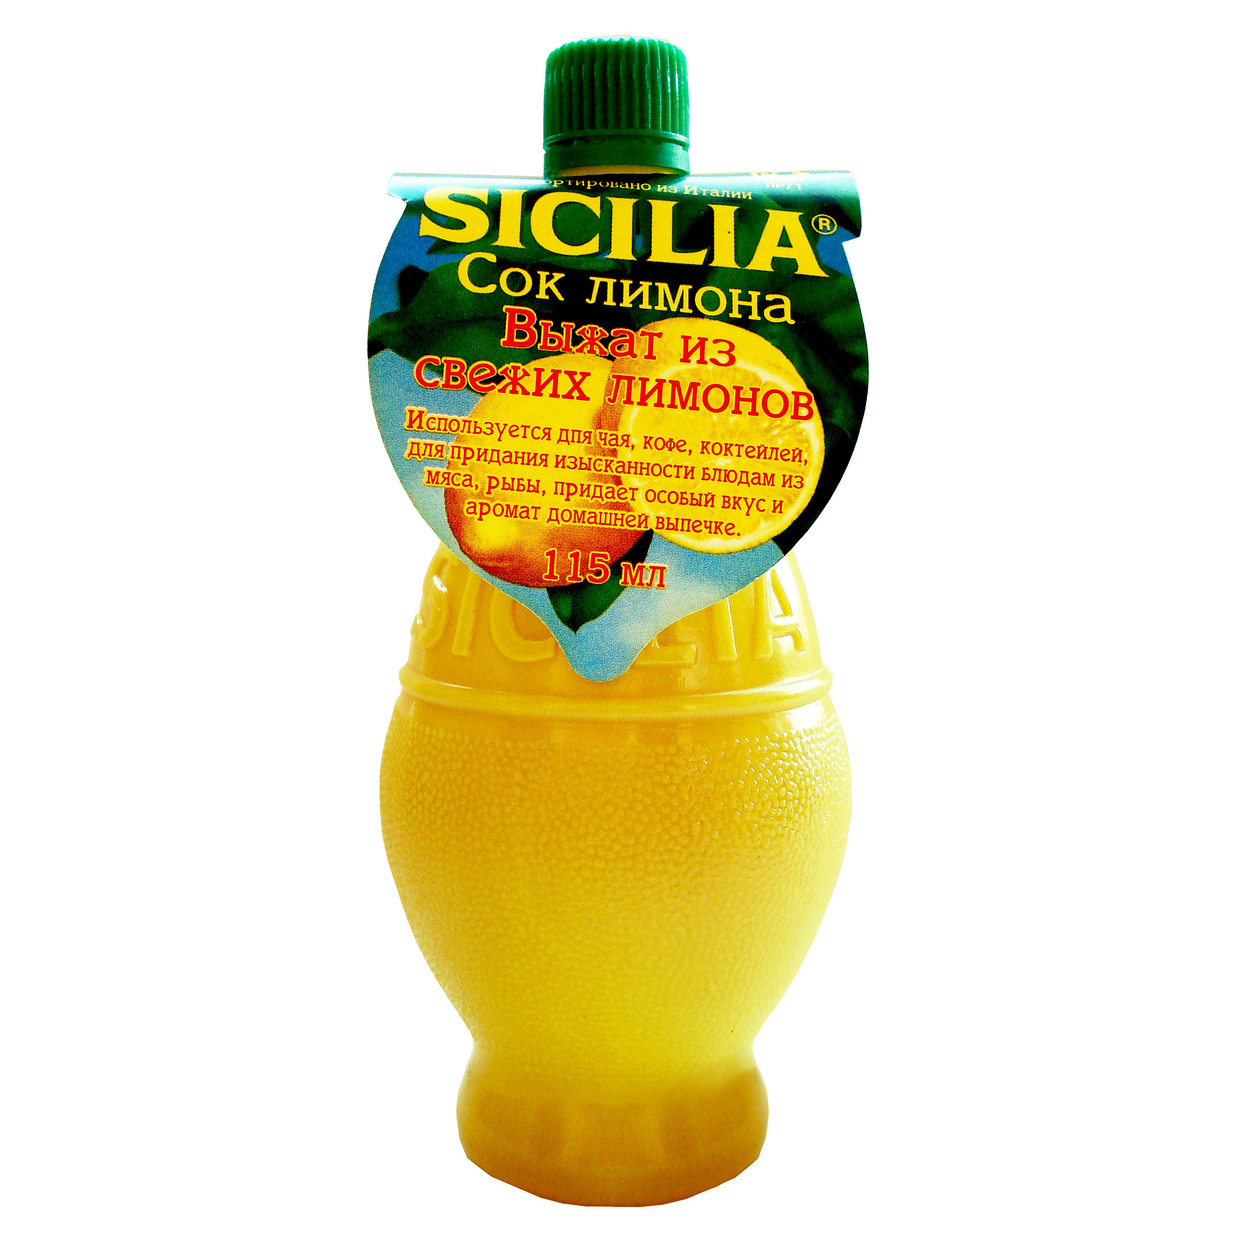 Приправа Sicilia Сок лимона 115мл по акции в Пятерочке